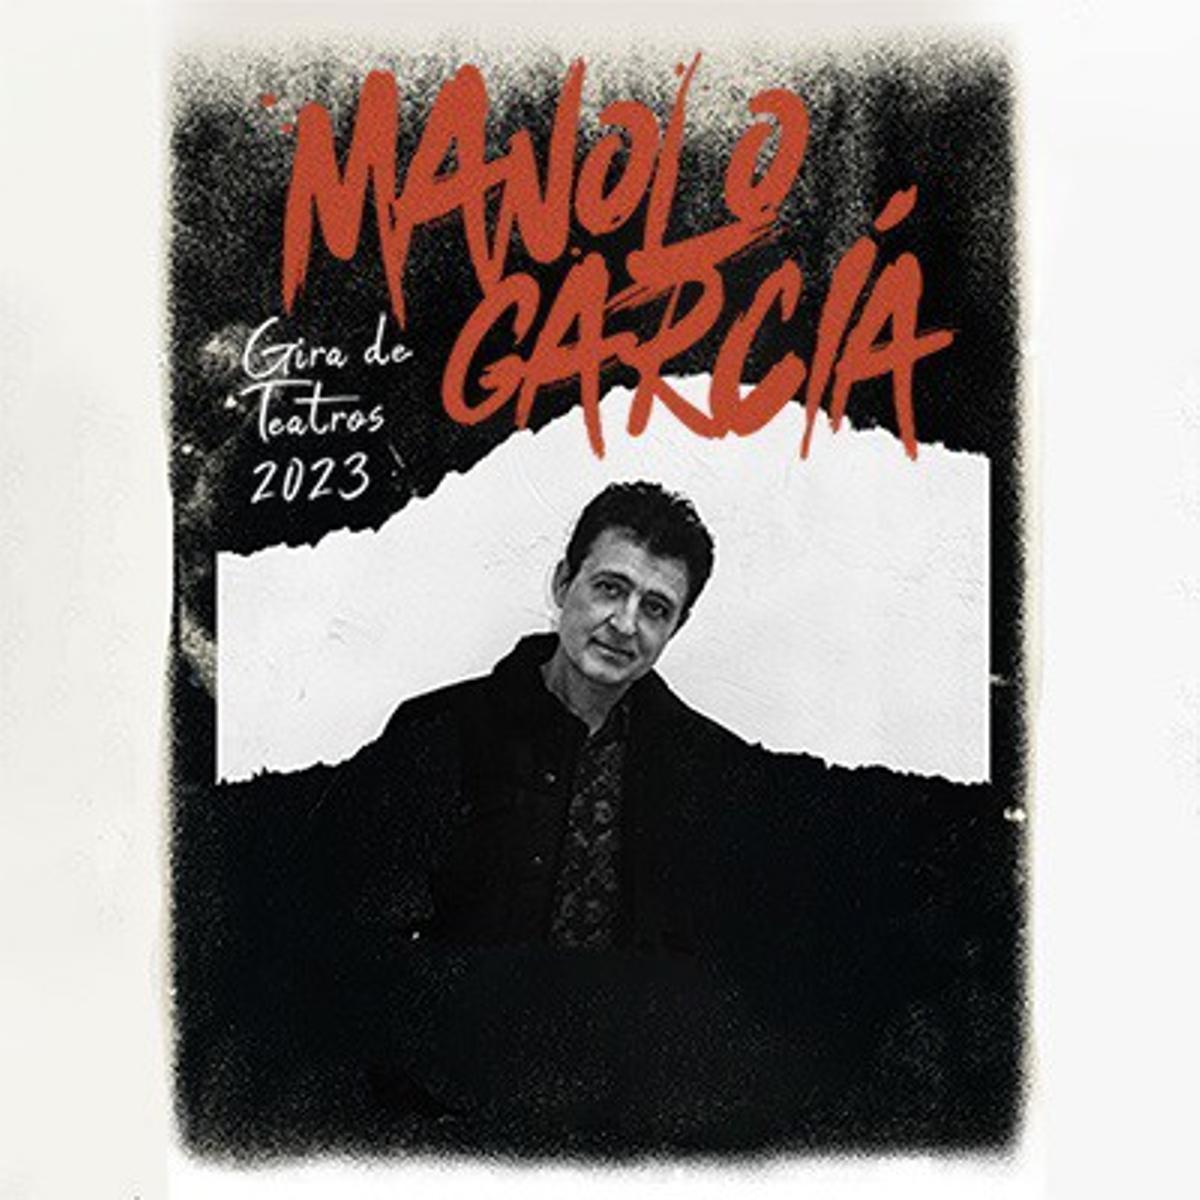 Cartel del concierto de Manolo García